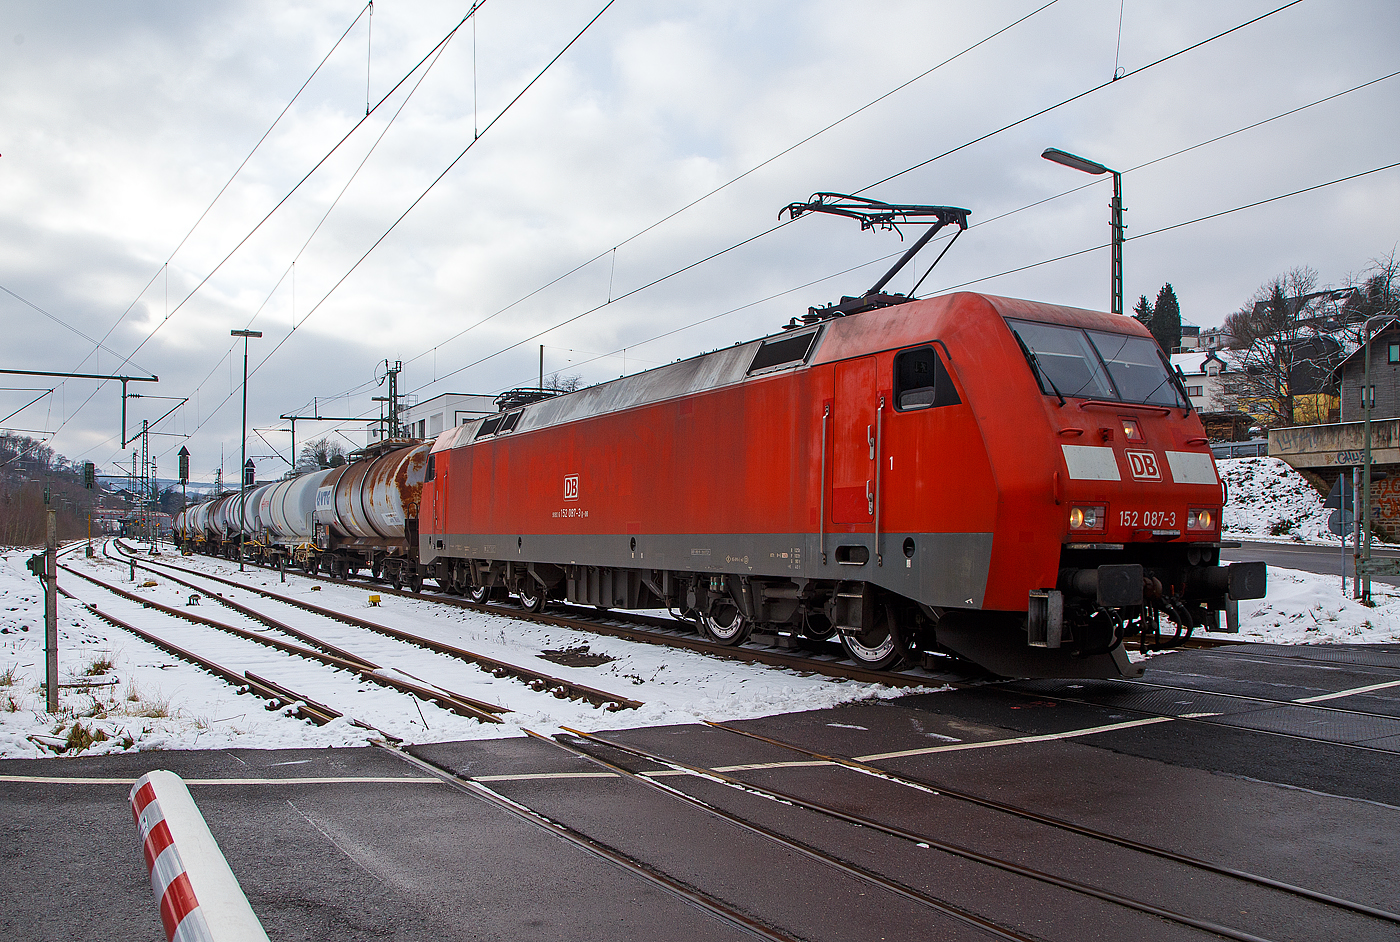 Die 152 087-3 (91 80 6152 087-3 D-DB) der DB Cargo AG fährt am 21.01.2023 mit einem Ethylendichlorid (Gefahrgut-Nr. 336/1184) beladenen Kesselwagenzug durch Niederschelden (Sieg) in Richtung Siegen.

Die Siemens ES64F wurde 2000 noch von Krauss-Maffei in München-Allach unter der Fabriknummer 20214 gebaut.